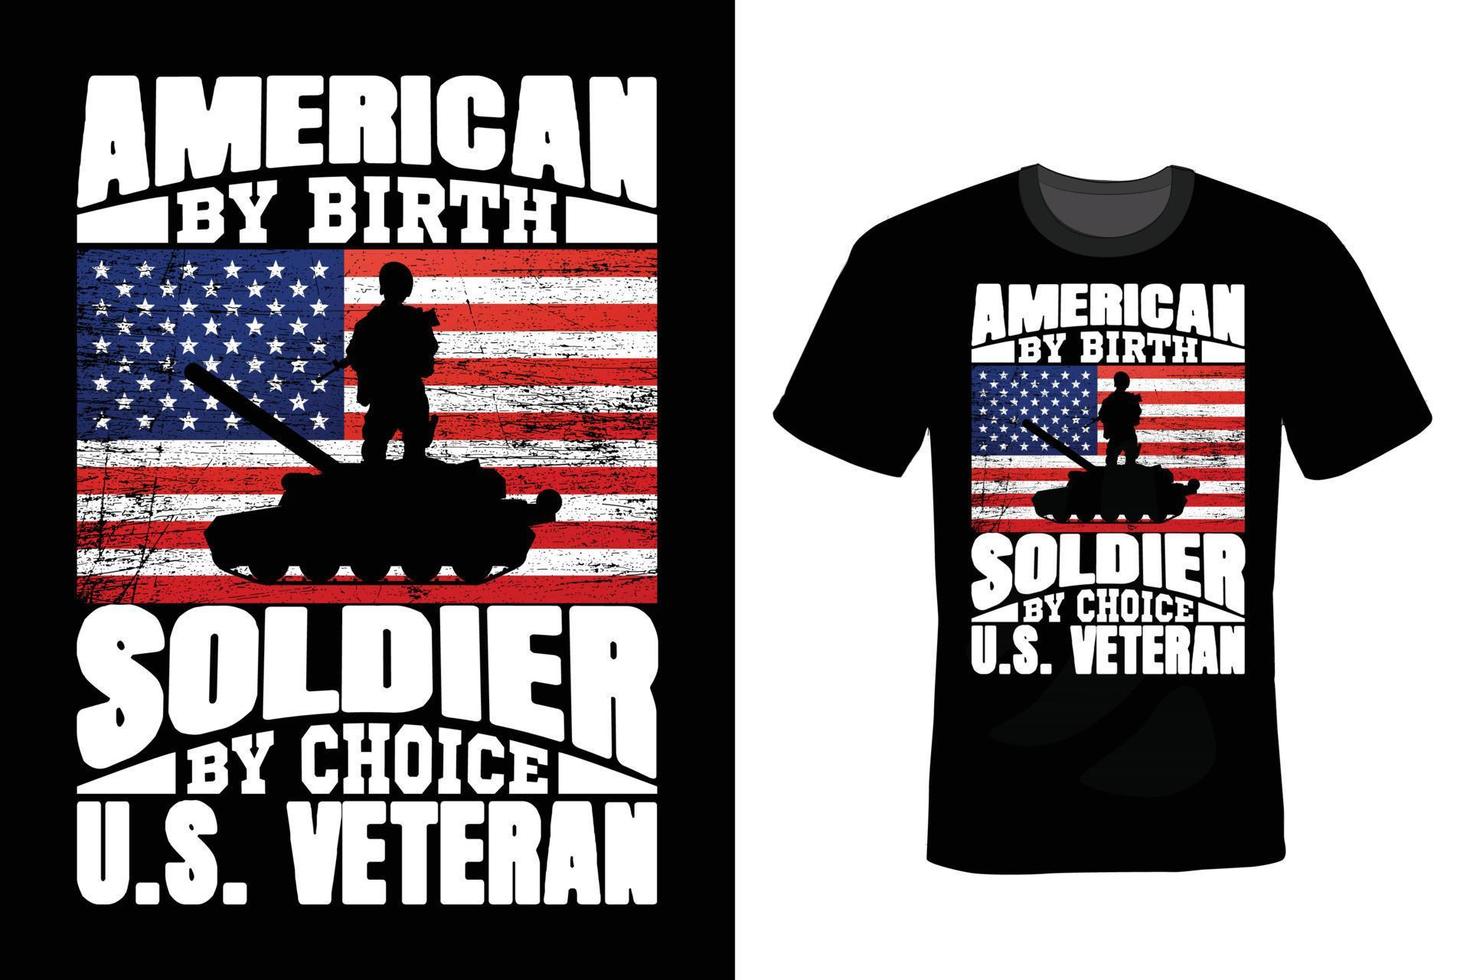 design della maglietta del giorno dei veterani, vintage, tipografia vettore